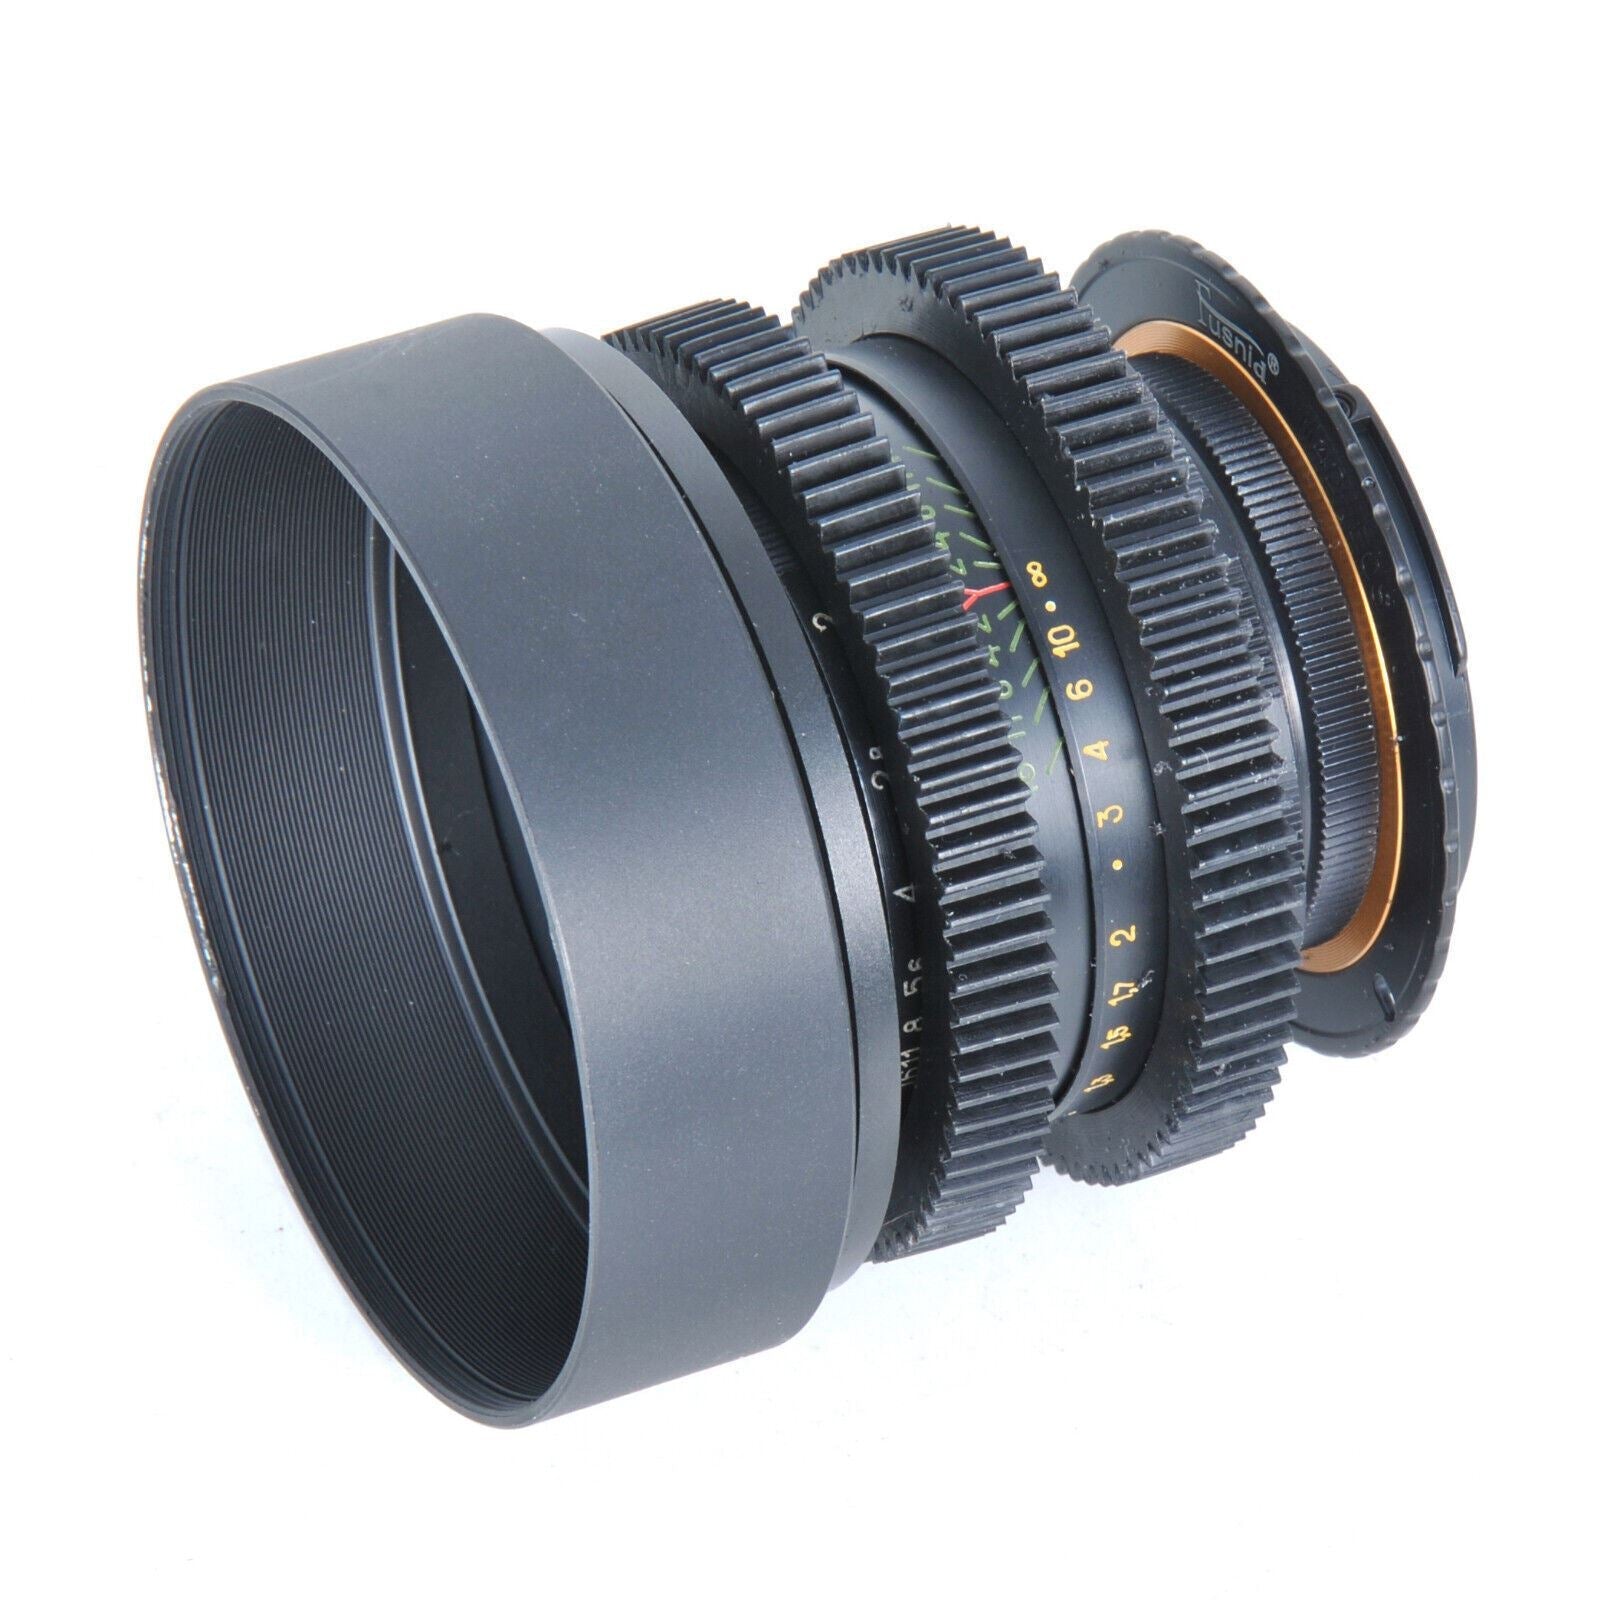 135mm Cine Mod Lenses Set